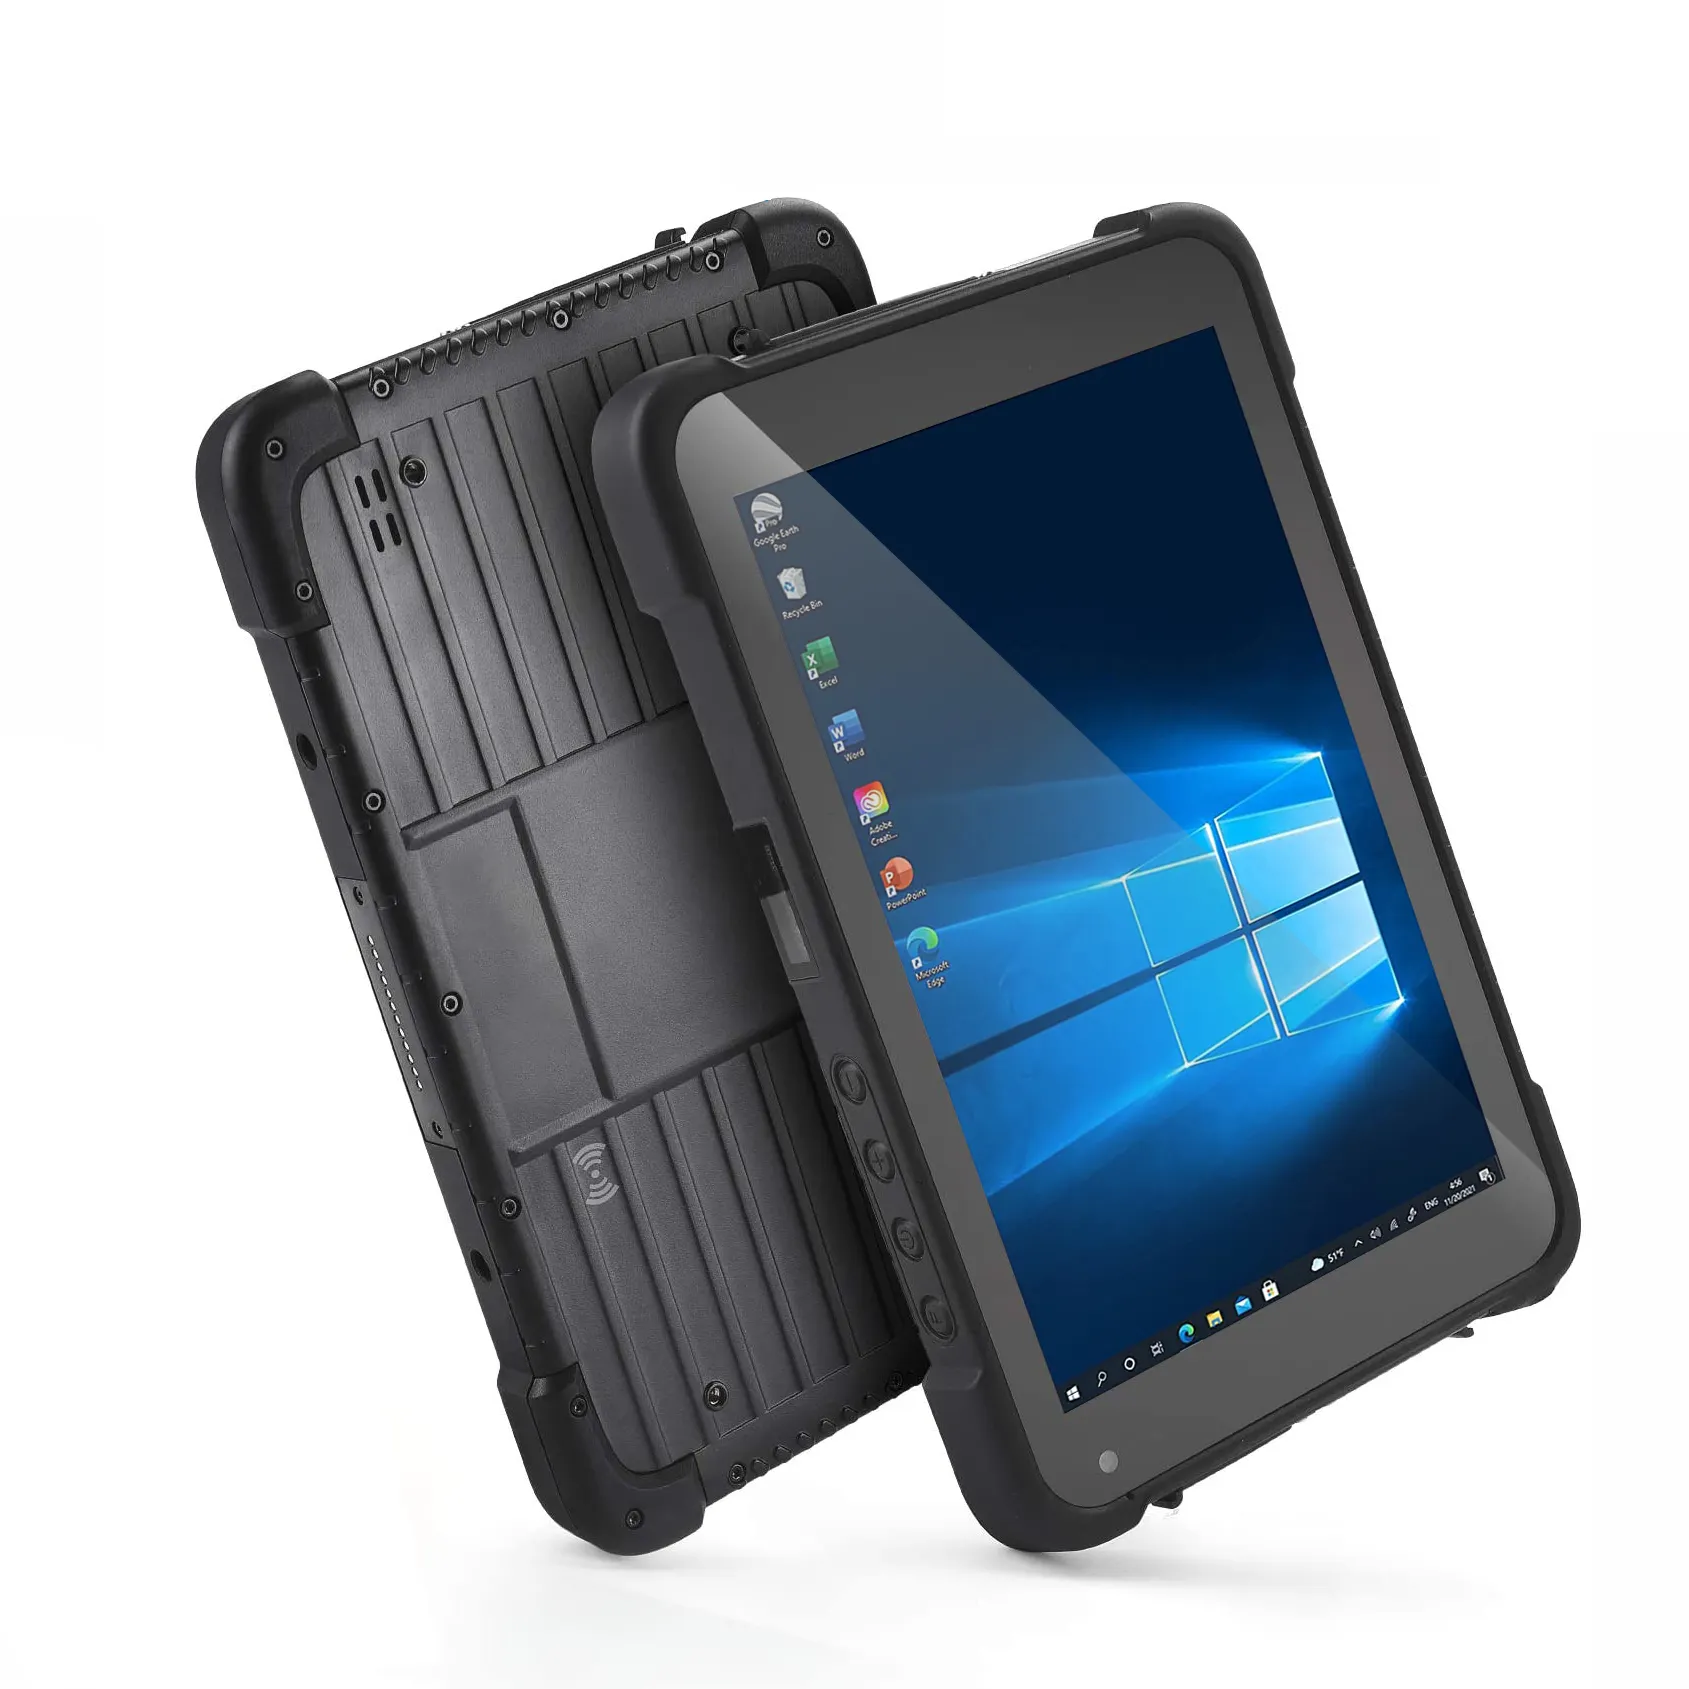 RUGLINE barkod tarayıcı ip67 sınıf hava geçirmez sağlamlaştırılmış aşırı tablet pc 7800mAh 8 inç sağlam tablet android